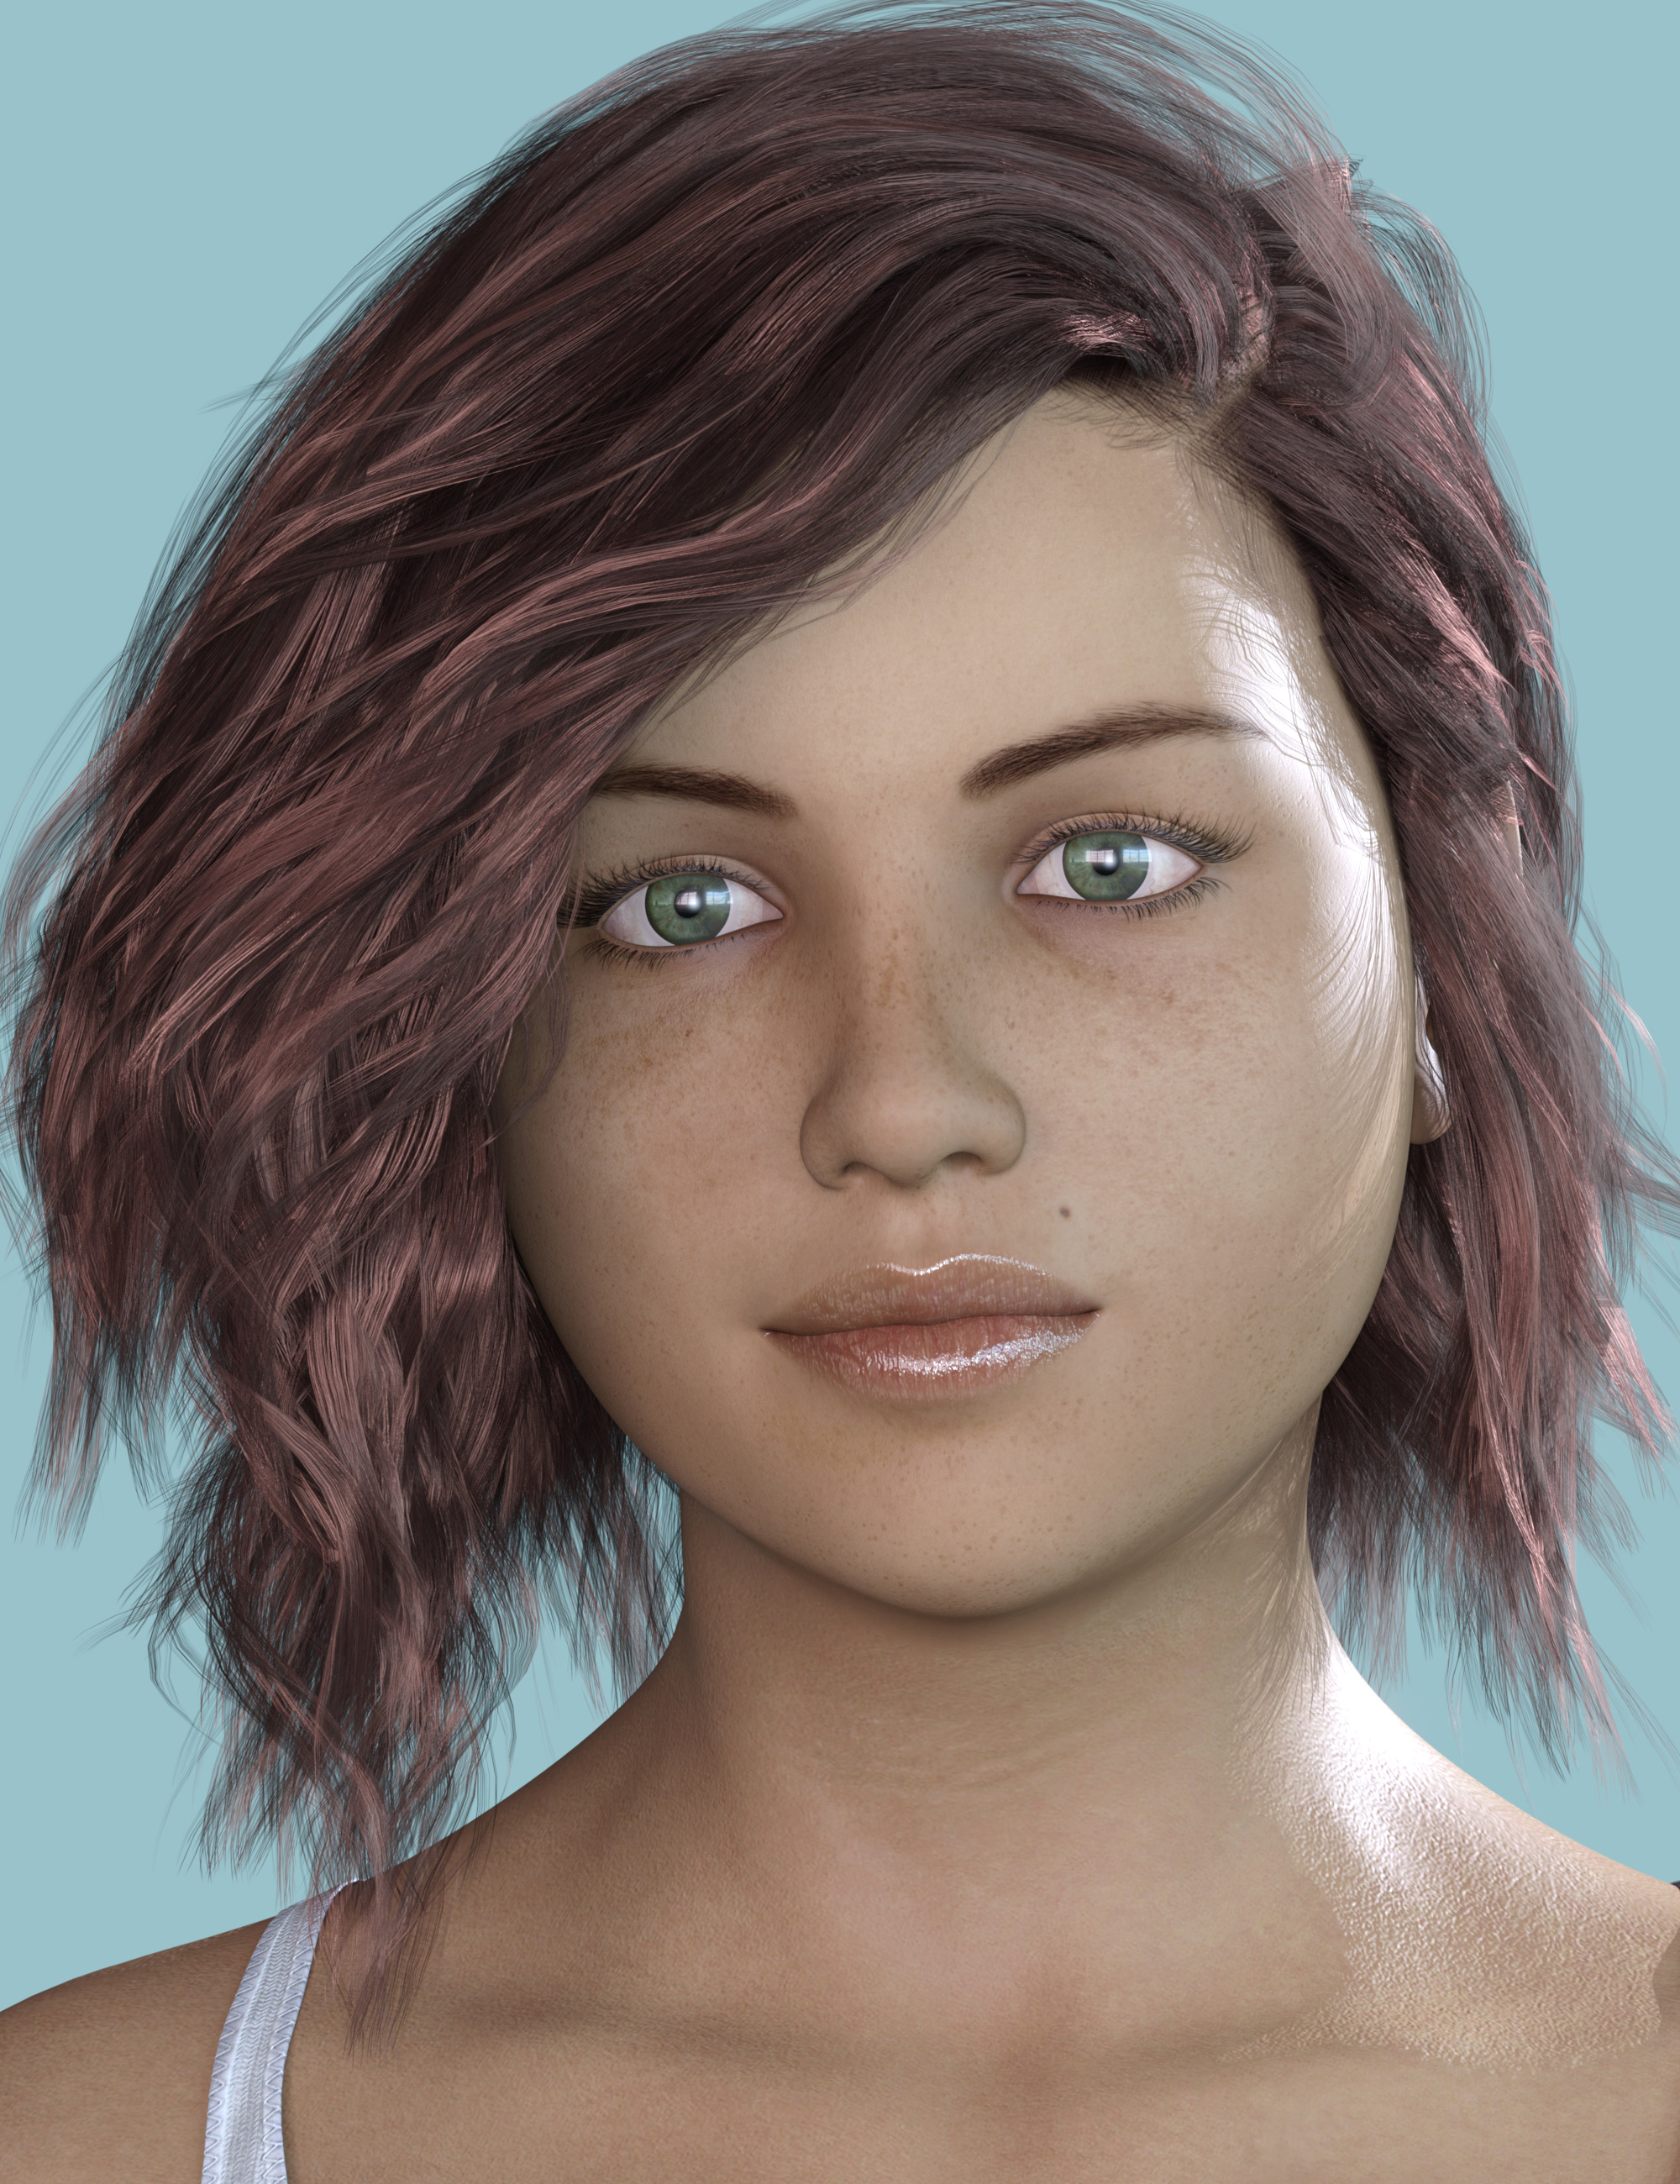 DE Alice for Genesis 8 Female by: Dark-Elf, 3D Models by Daz 3D